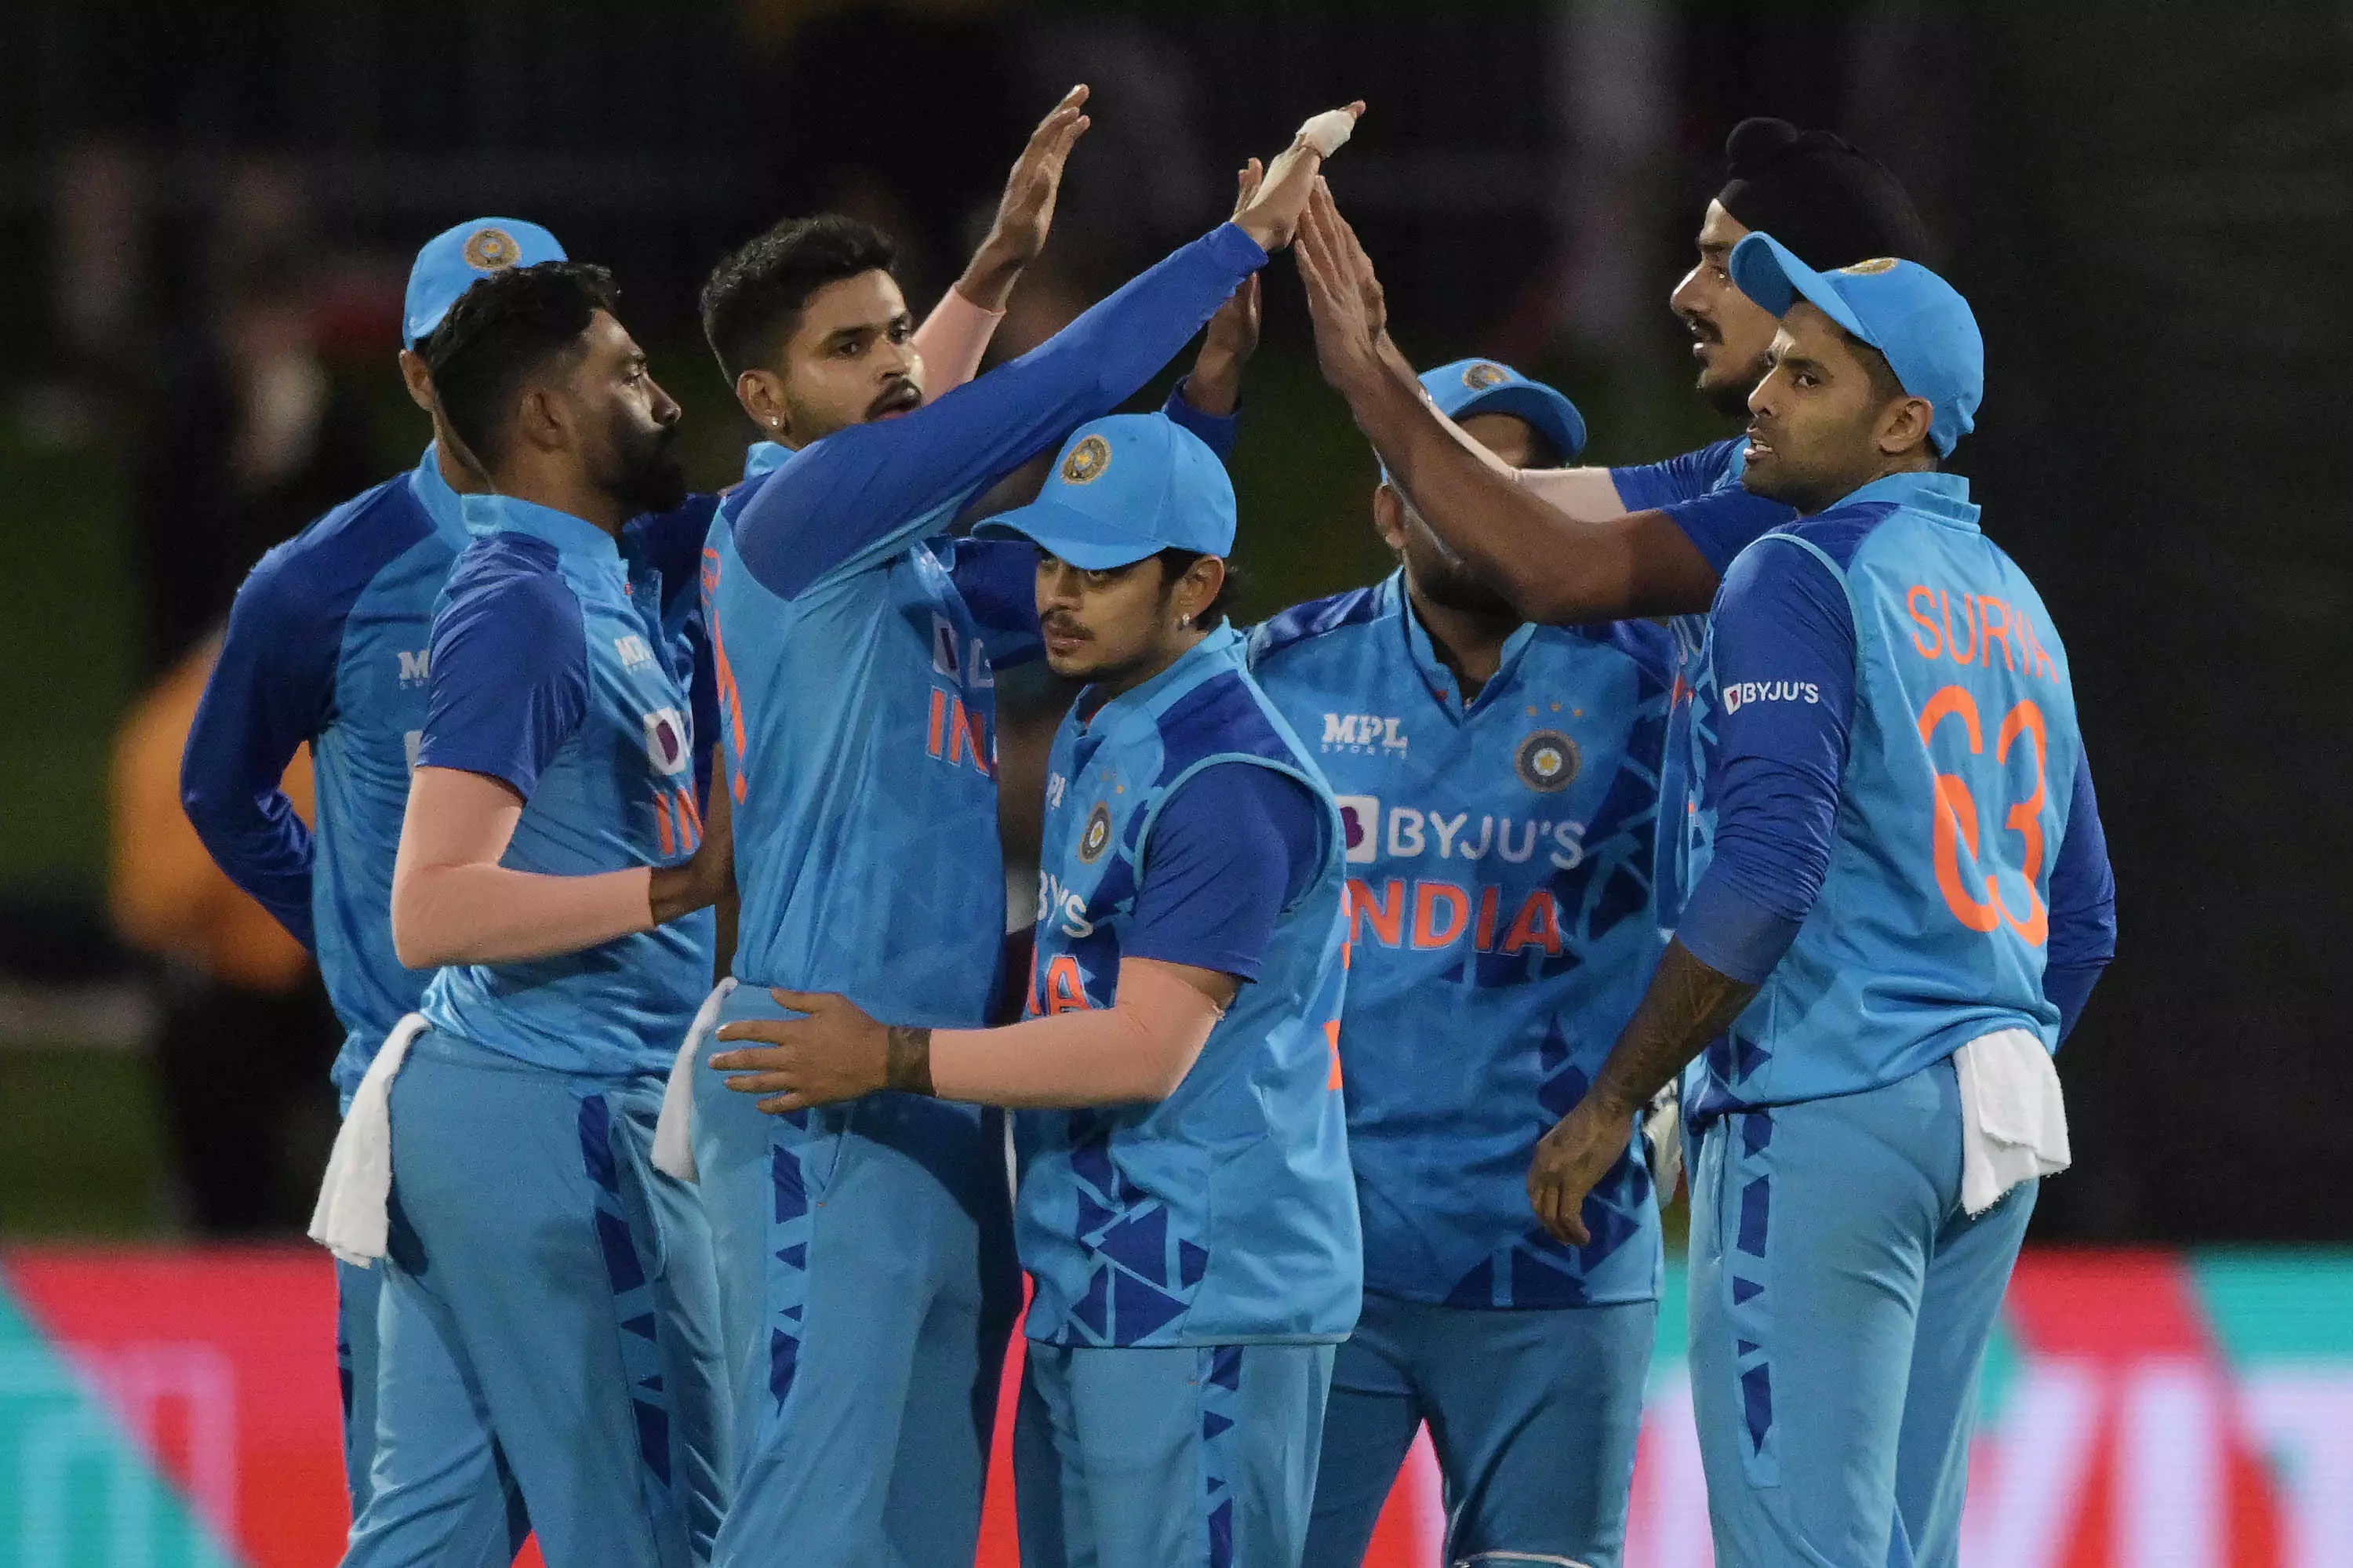 INDvsNZ 3rd T20 : बारिश के कारण टाई हुआ भारत-न्यूजीलैंड का दूसरा टी-20, भारत ने जीती सीरीज